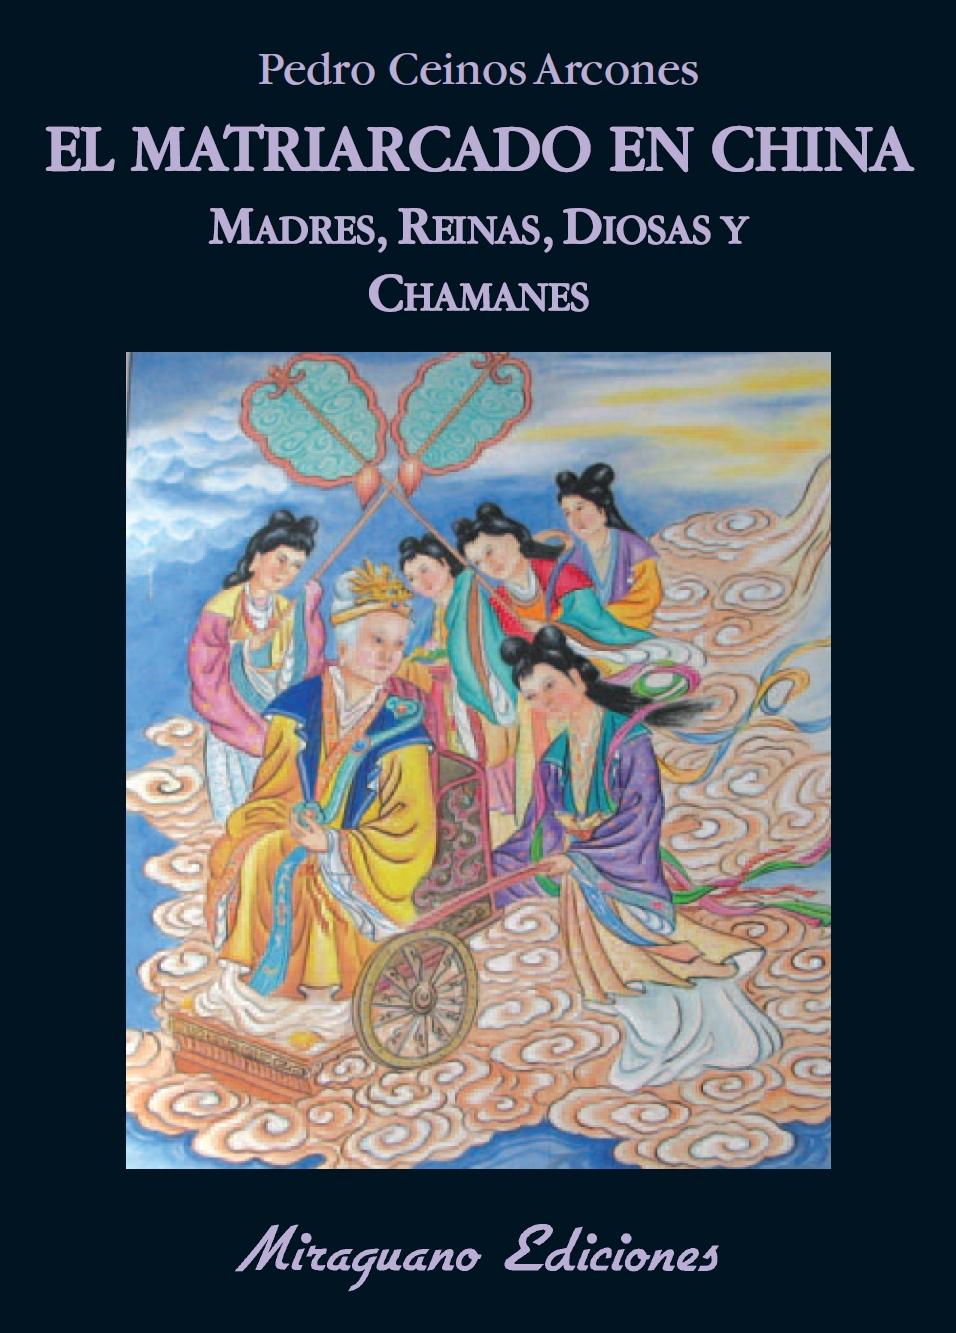 El Matriarcado en China "Madres, Diosas, Reinas y Chamanes". 